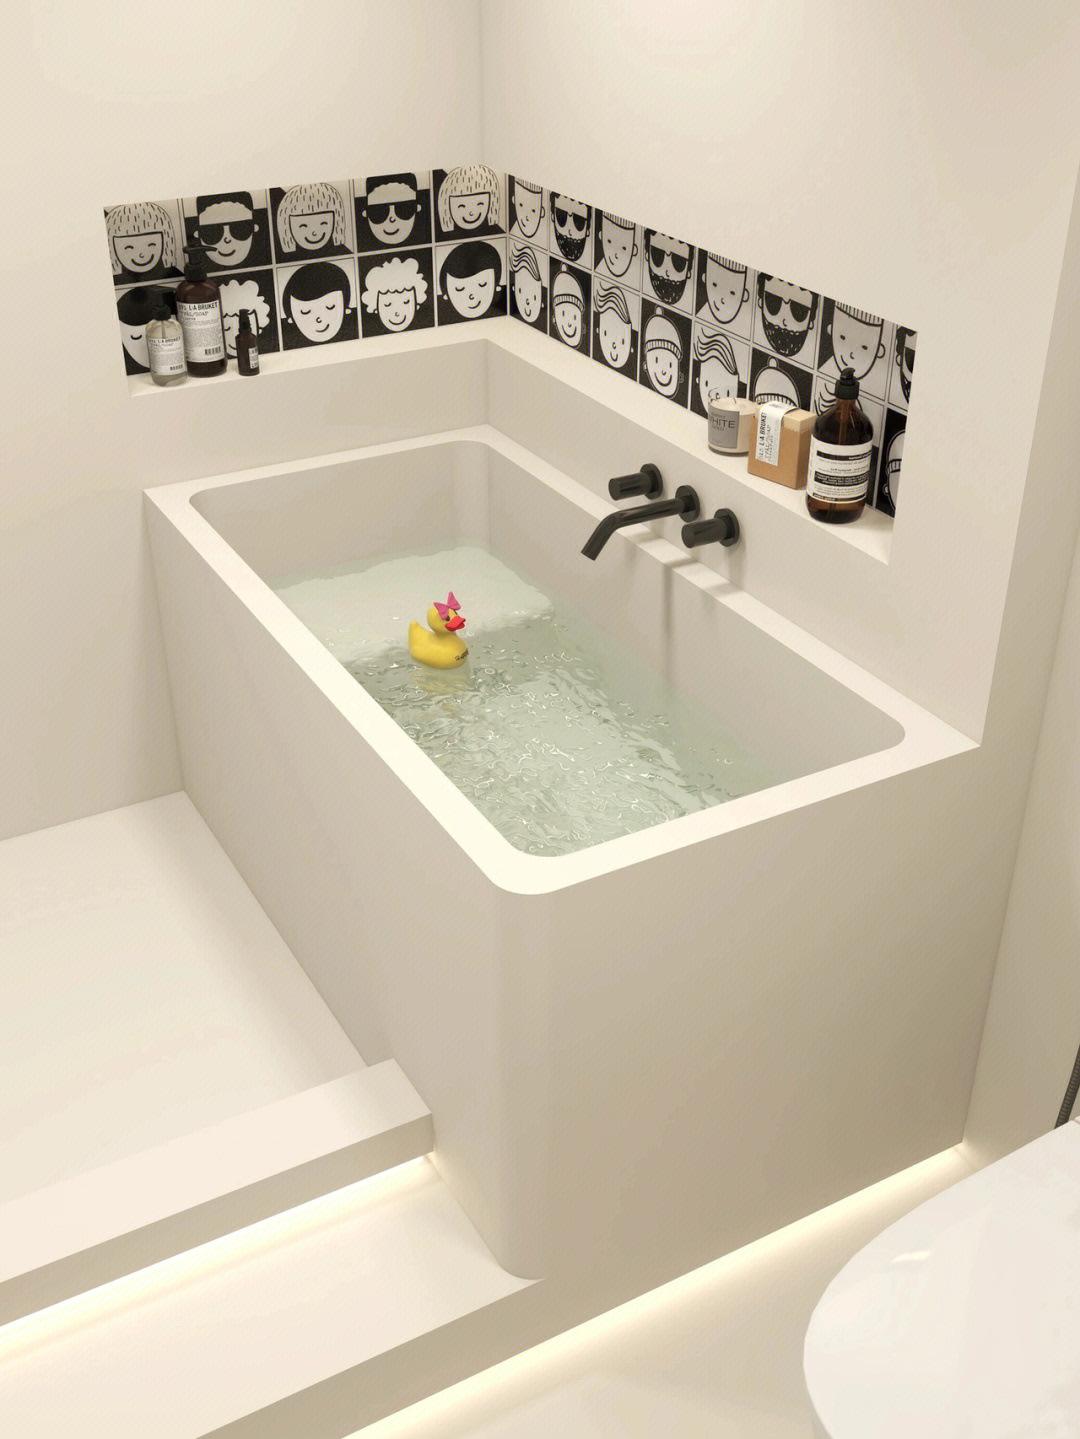 奶fufu的浴室太赞啦78自砌浴缸yyds06